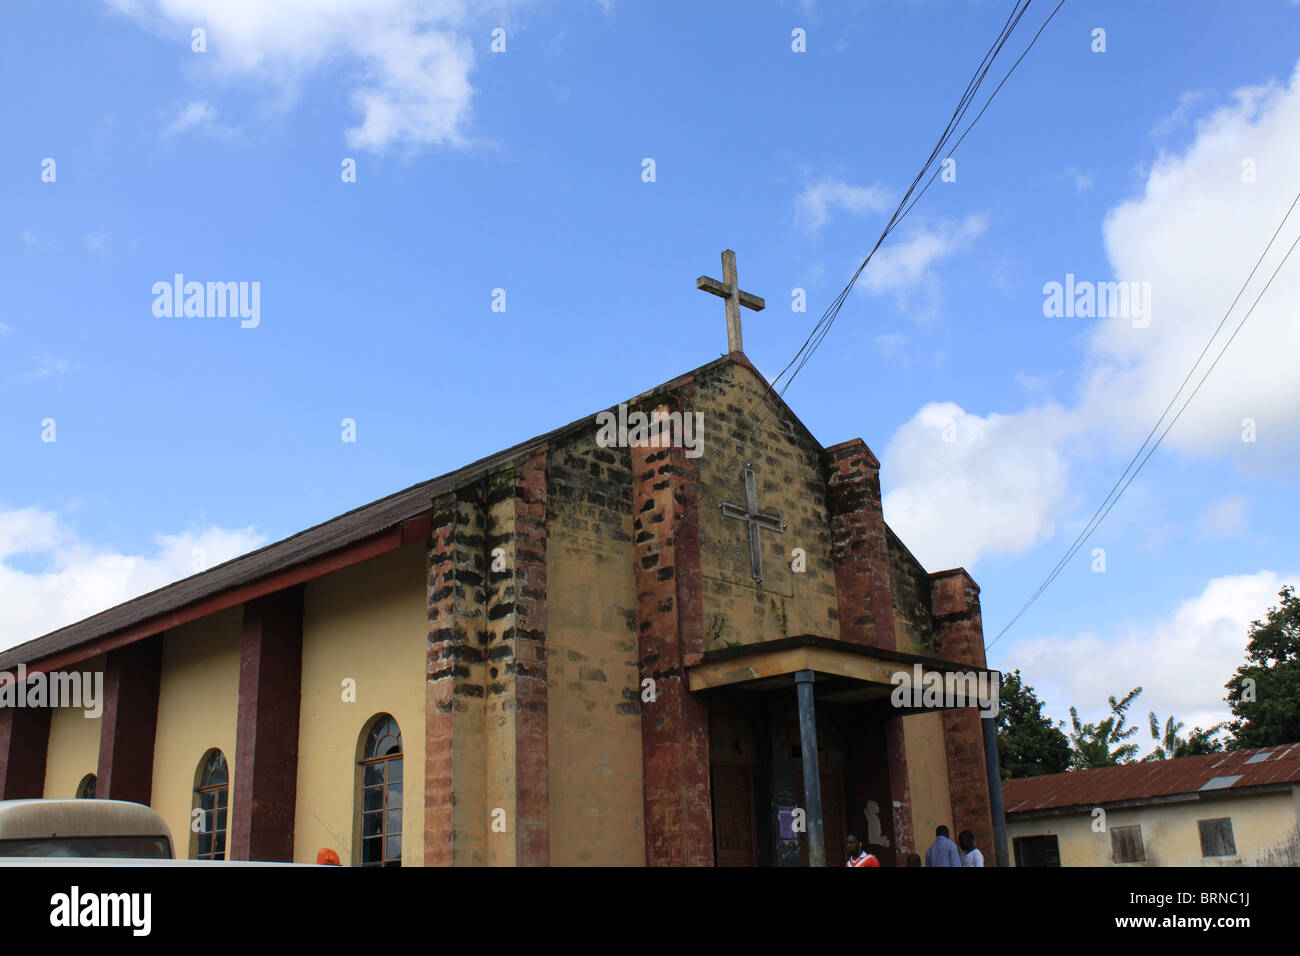 Un vieux bâtiment de l'église dans une communauté rurale d'Ekiti, ikoro-state, Nigéria, majorité de la population sont des chrétiens. Banque D'Images